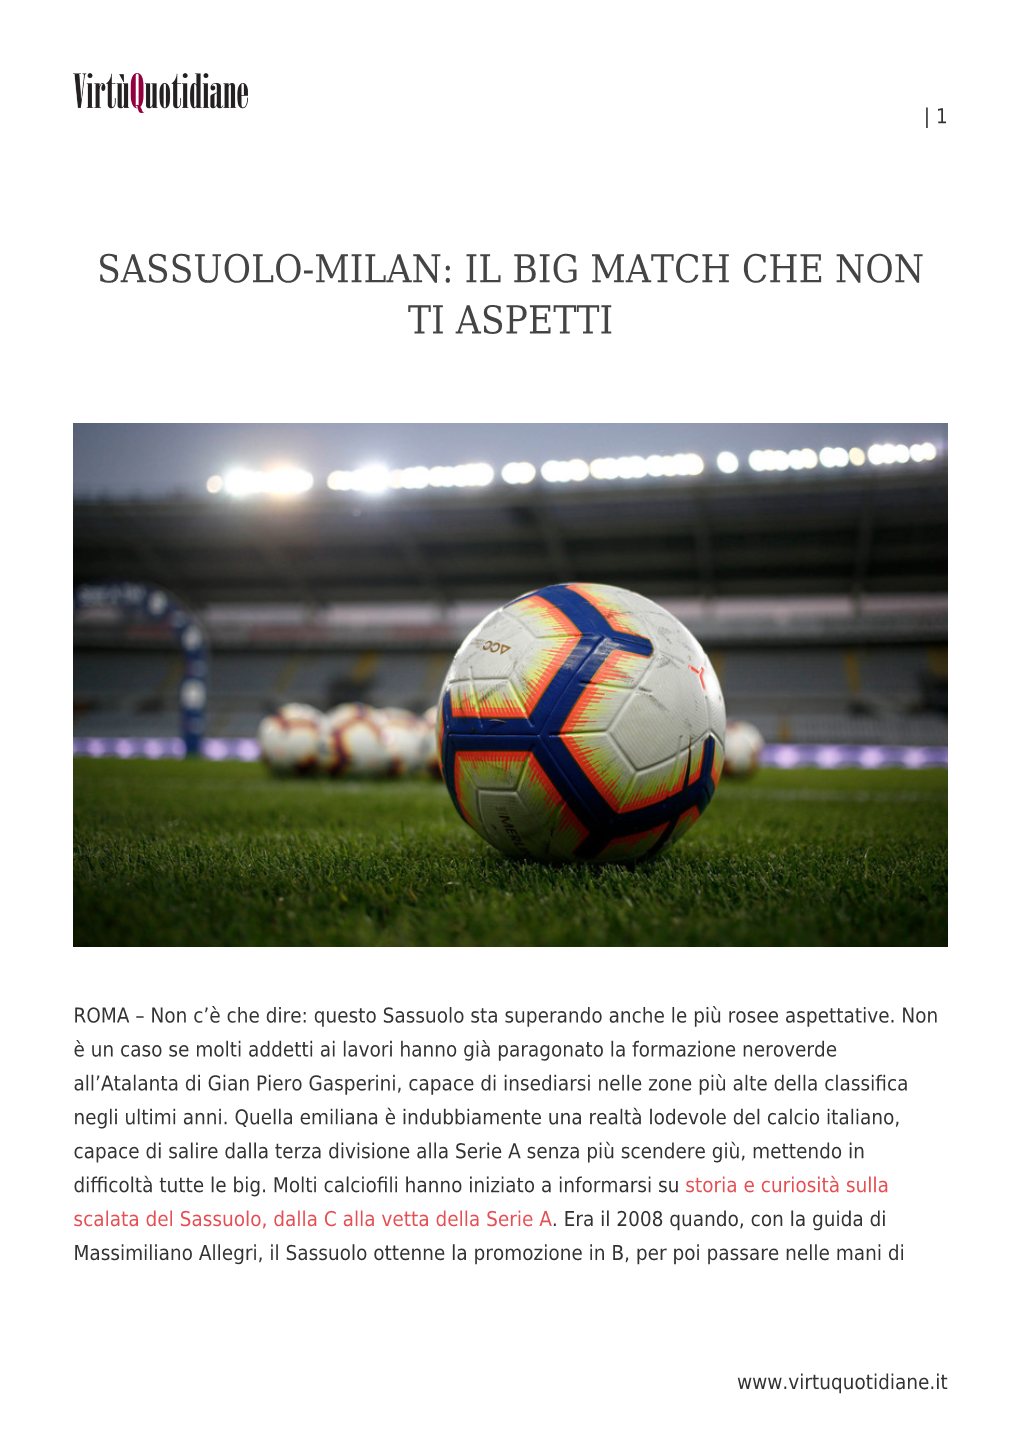 Sassuolo-Milan: Il Big Match Che Non Ti Aspetti